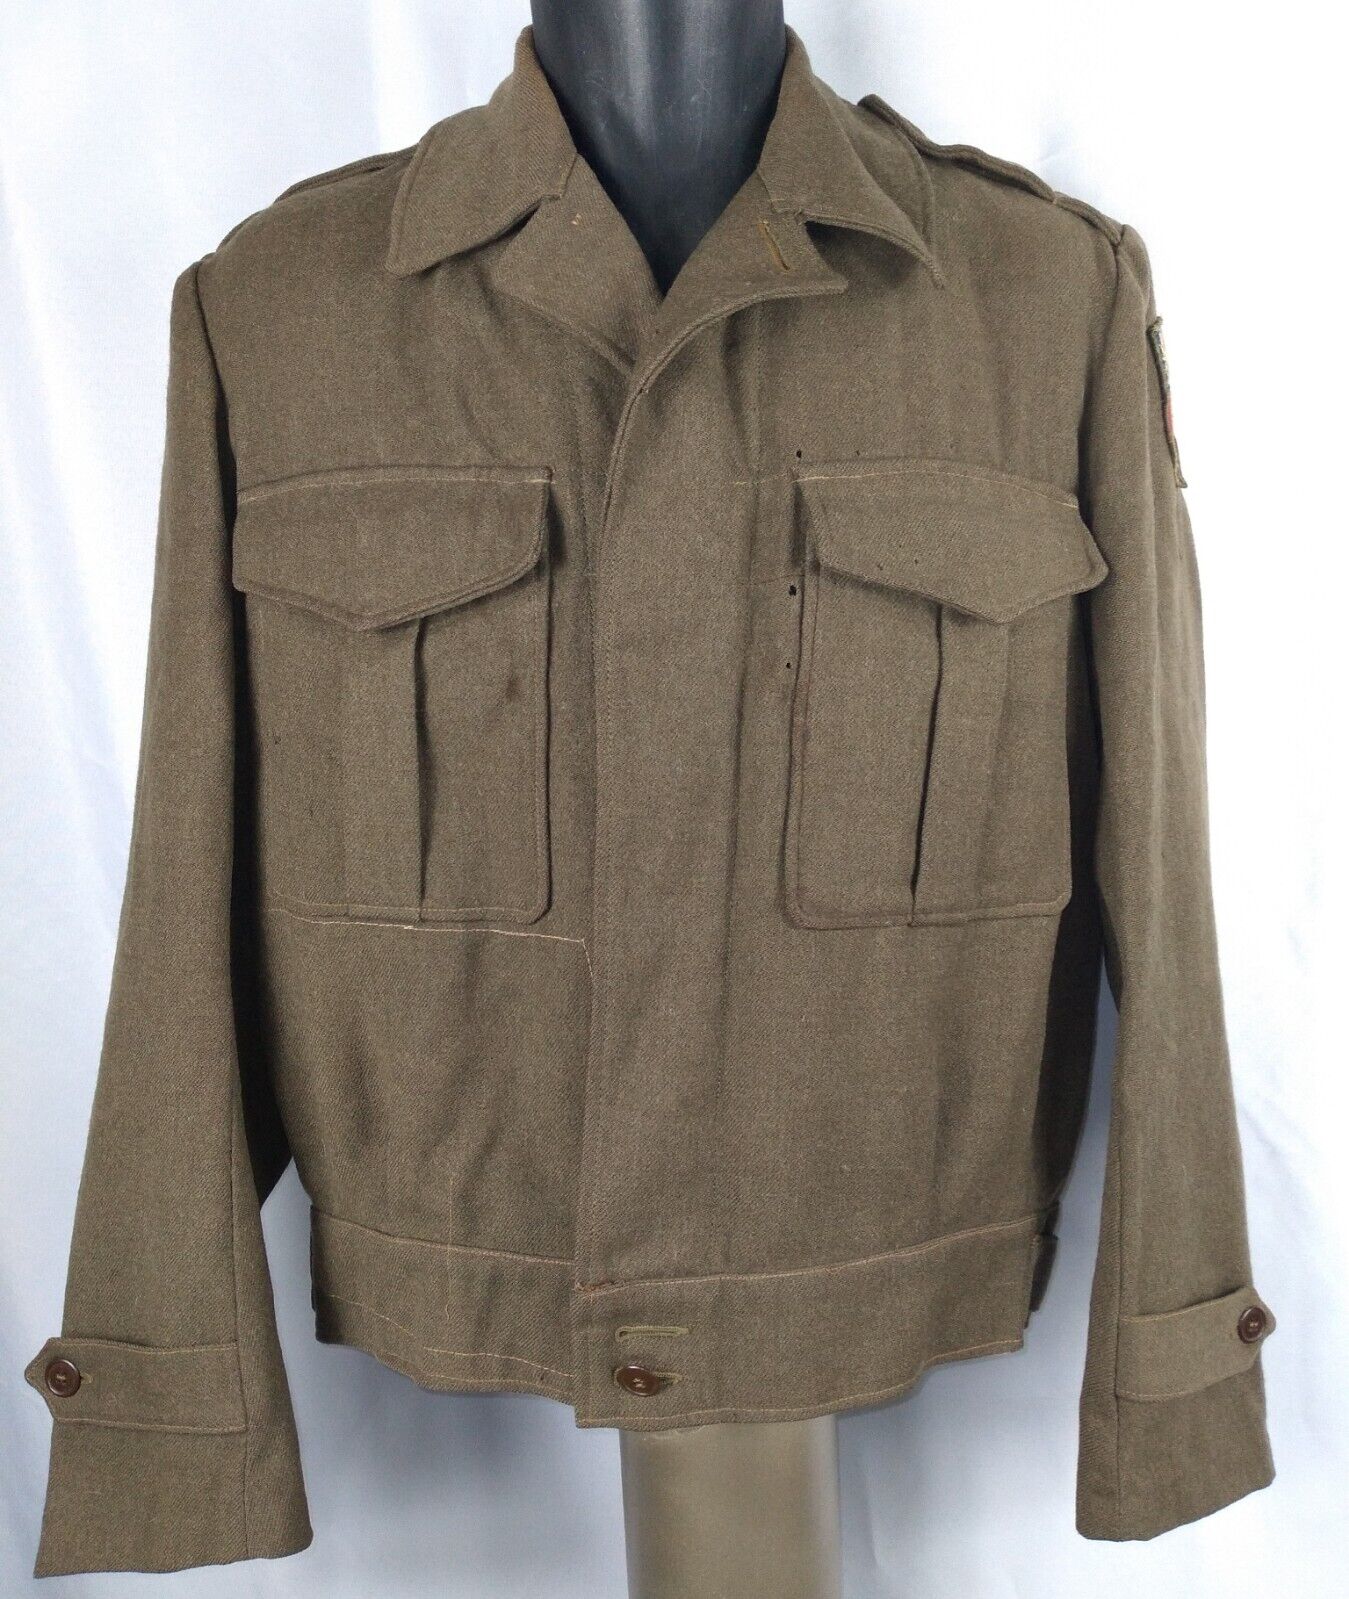 Stunning World War II Aussie-Made CBI Jacket with Blood Chits WWII WW2 Uniform 